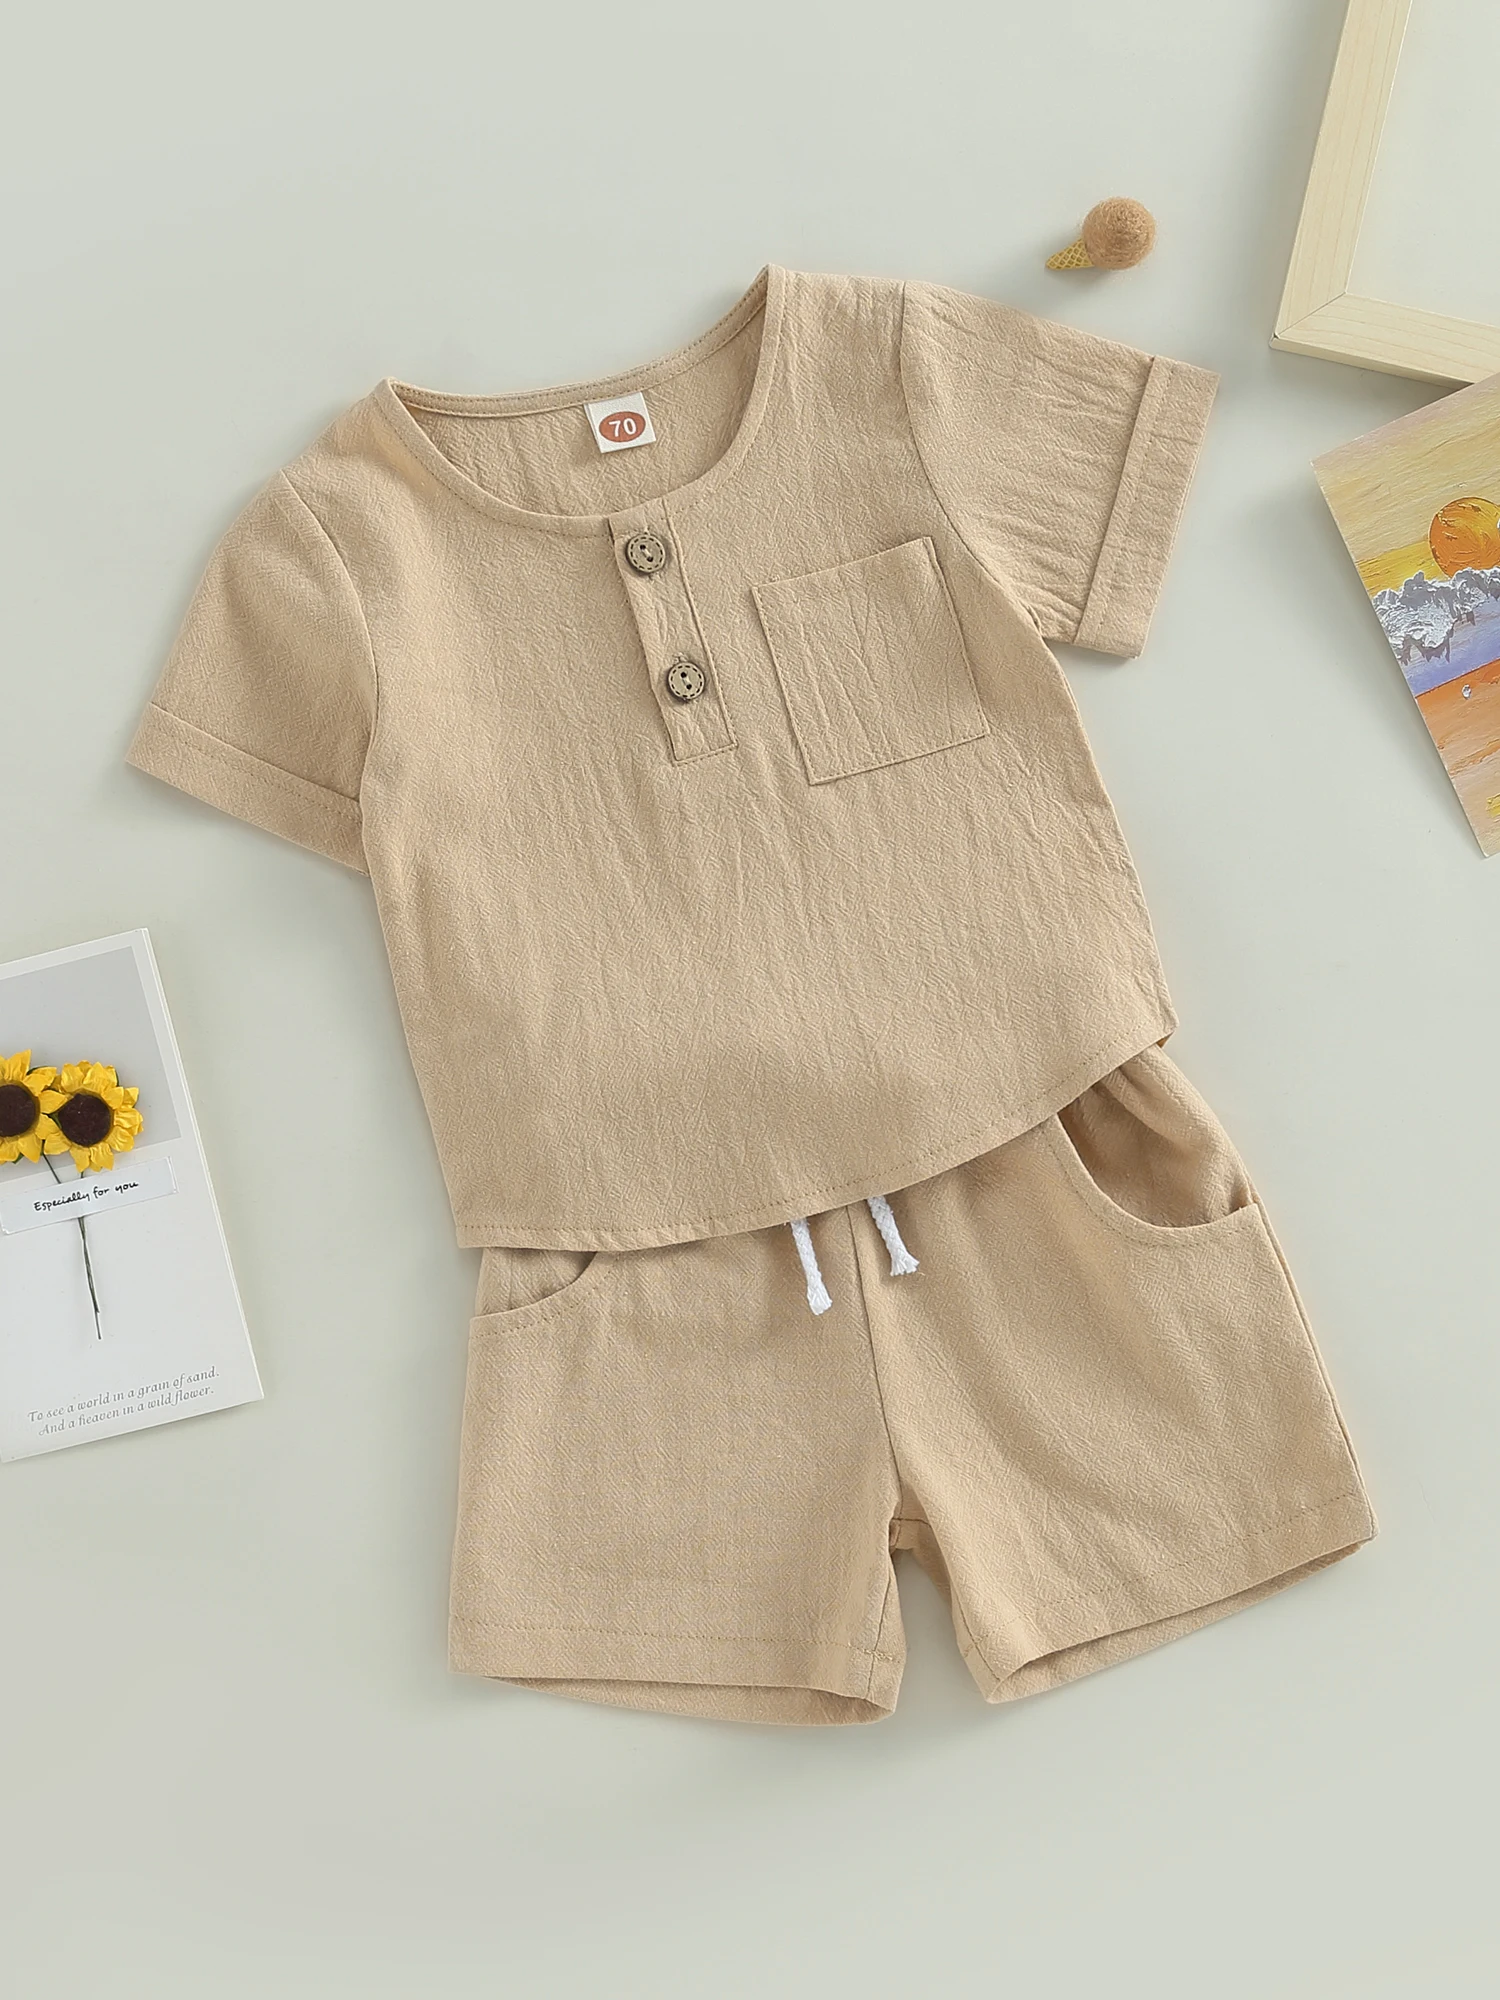 Очаровательный комплект летней одежды для маленьких мальчиков - футболки с короткими рукавами и шорты, наряды от Mubineo Идеально подходят для